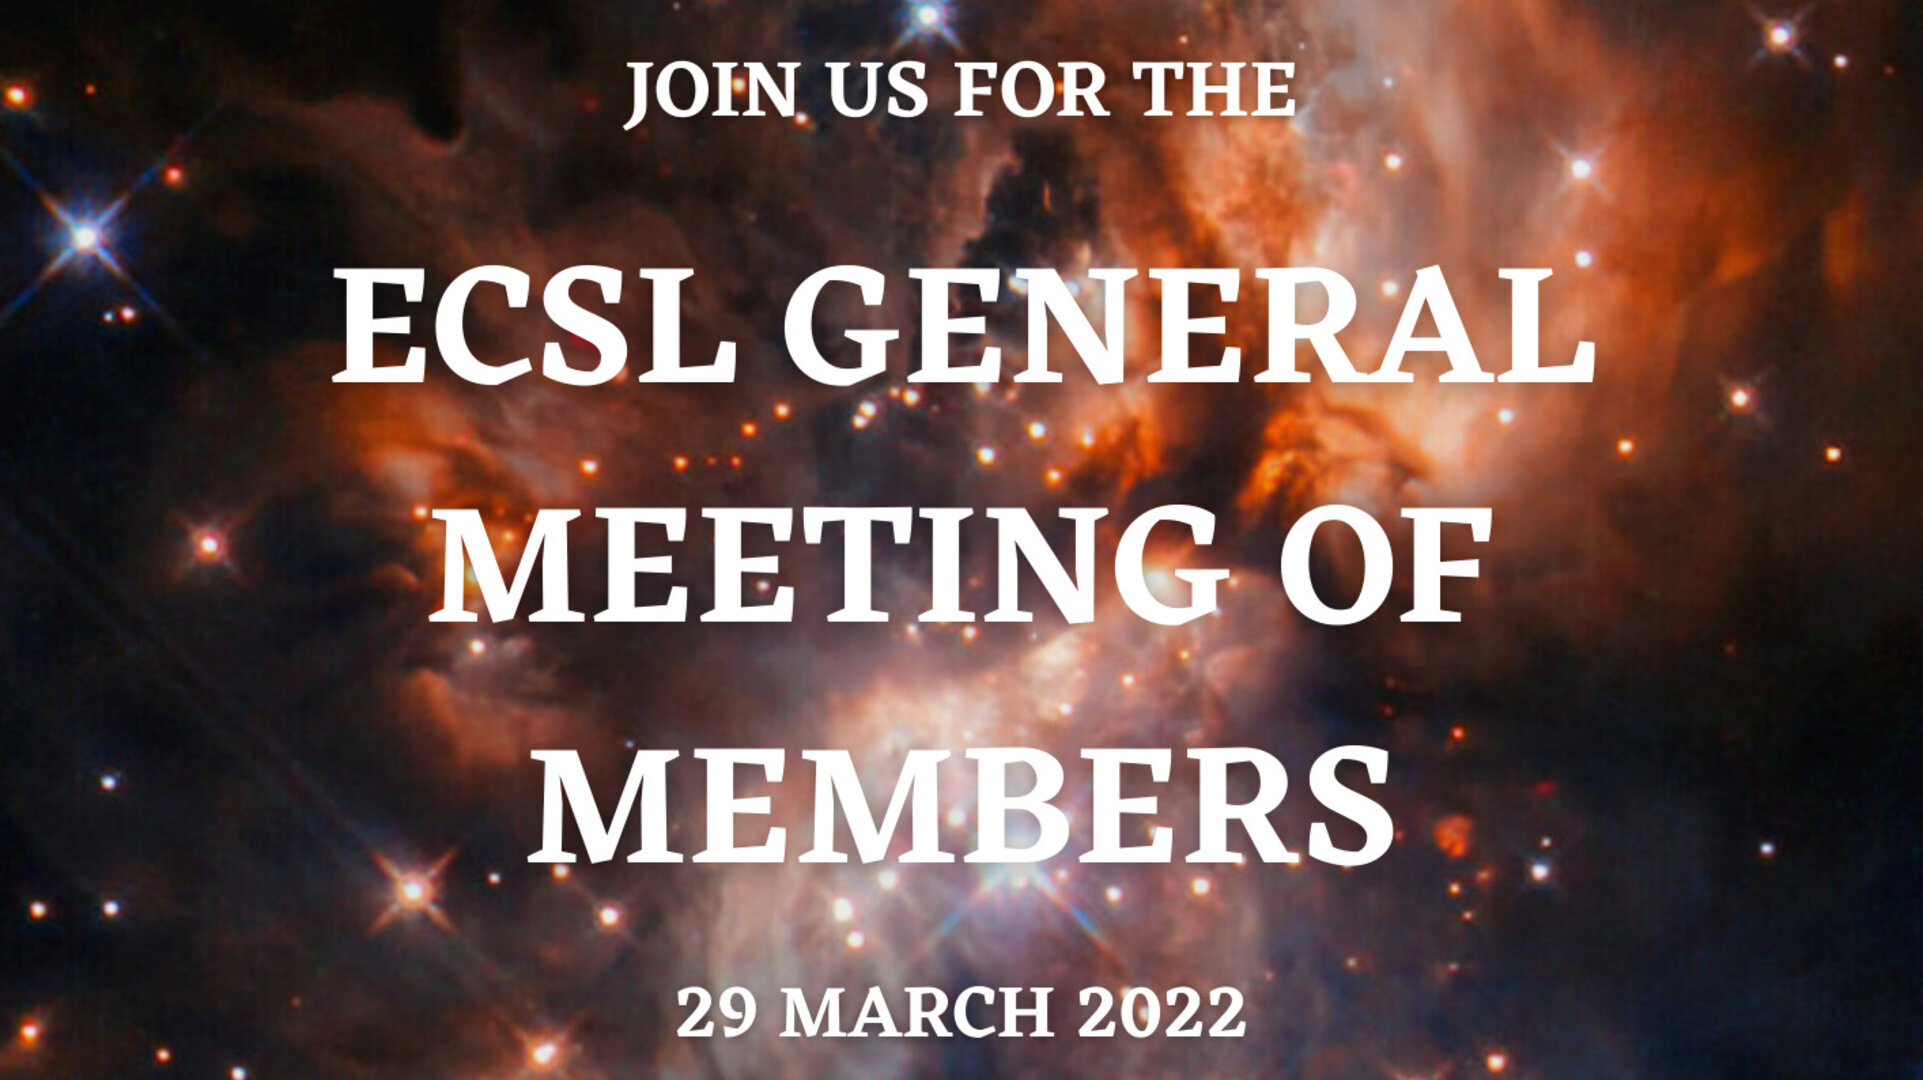 ECSL General Meeting of Members 2022